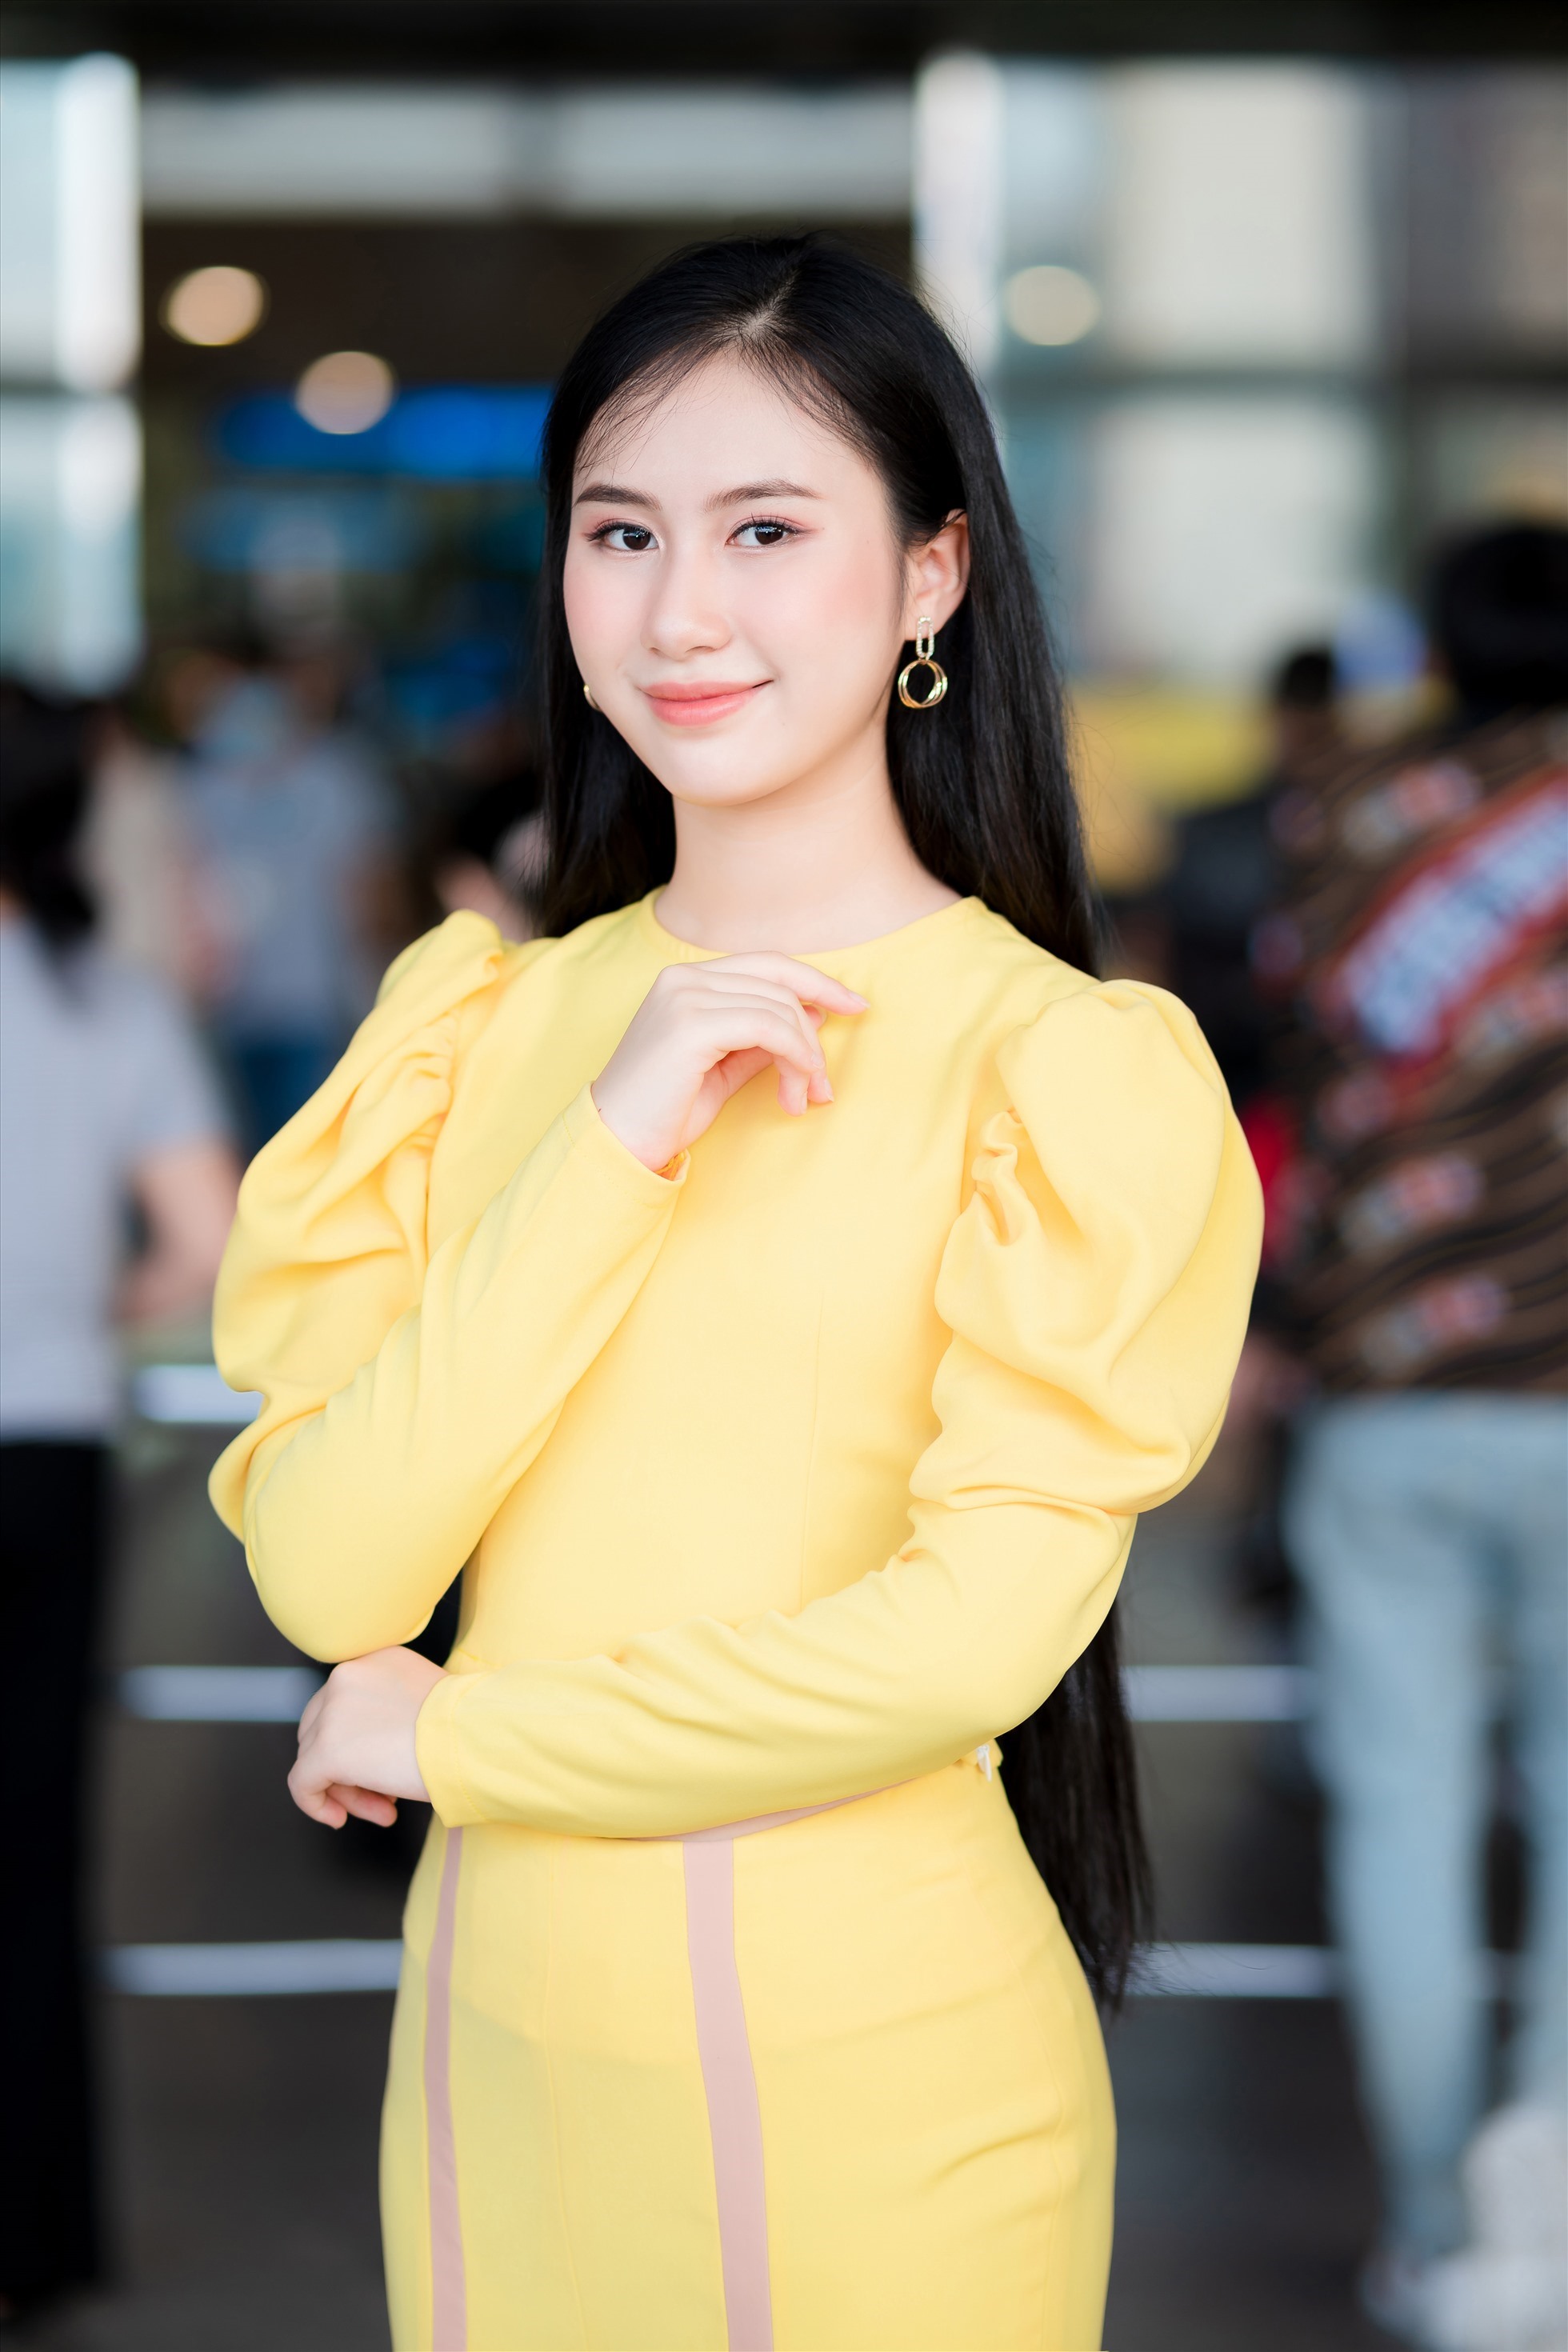 Nguyệt Minh được đánh giá có khả năng giao tiếp tốt, cô dạn dĩ trò chuyện với các thí sinh khác cũng như hăng hái tham gia các chương trình mà ban tổ chức đề ra.